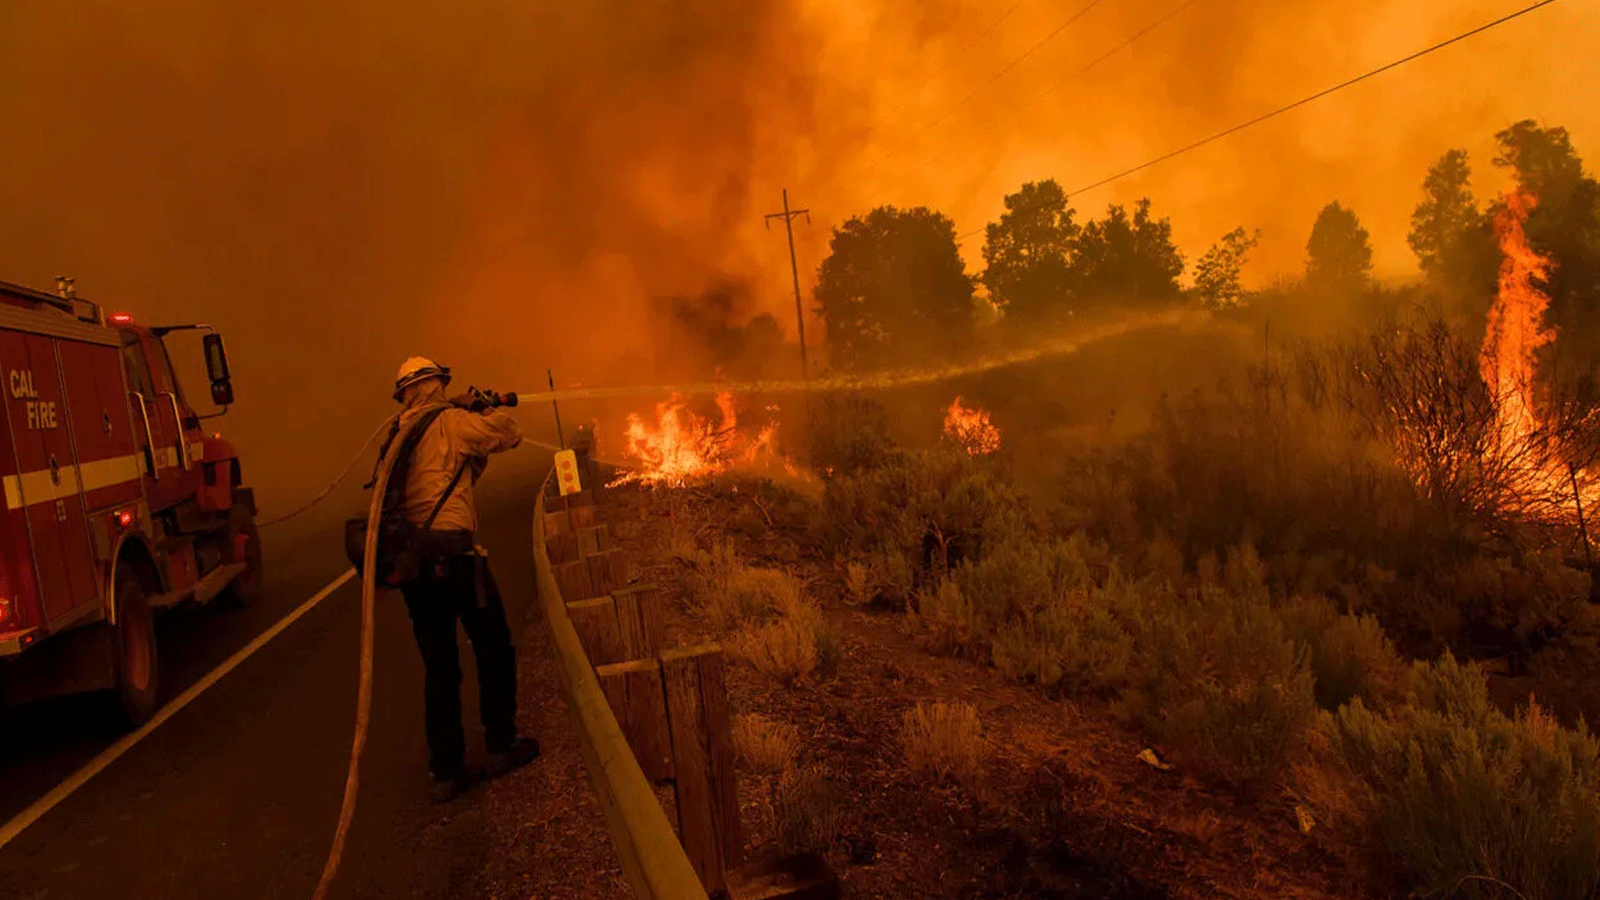  رجال إطفاء Cal Fire احتواء Dixie Fire يحاولون إطفاء الحريق على الطريق السريع 395 بالقرب من ميلفورد، كاليفورنيا. 17 آب\أغسطس 2021